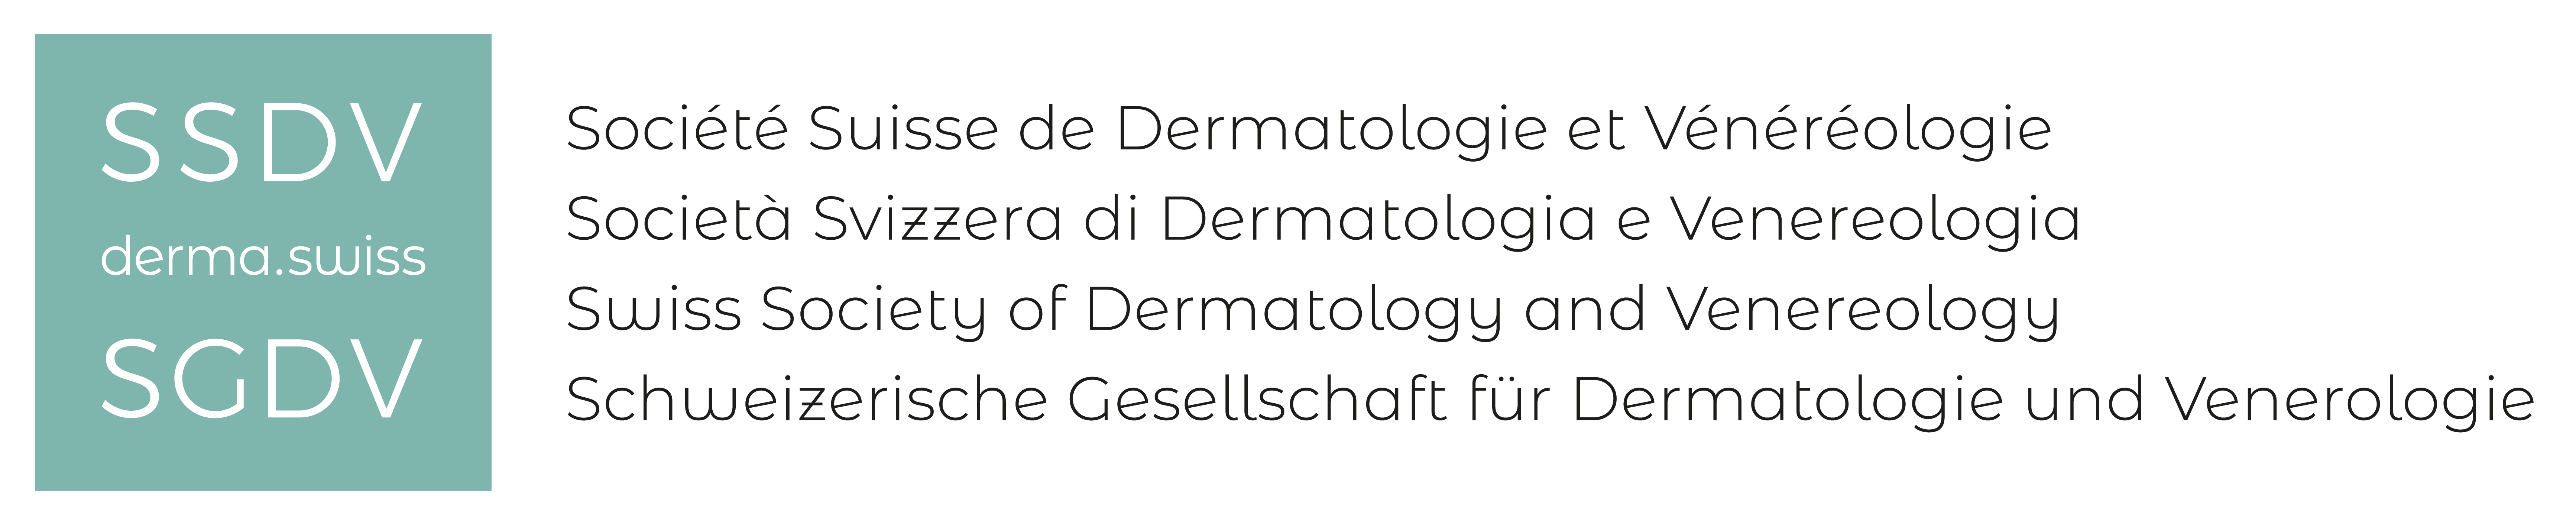 Logo der Schweizerischen Gesellschaft für Dermatologie und Venerologie, wo Dr. Büttiker Mitglied ist